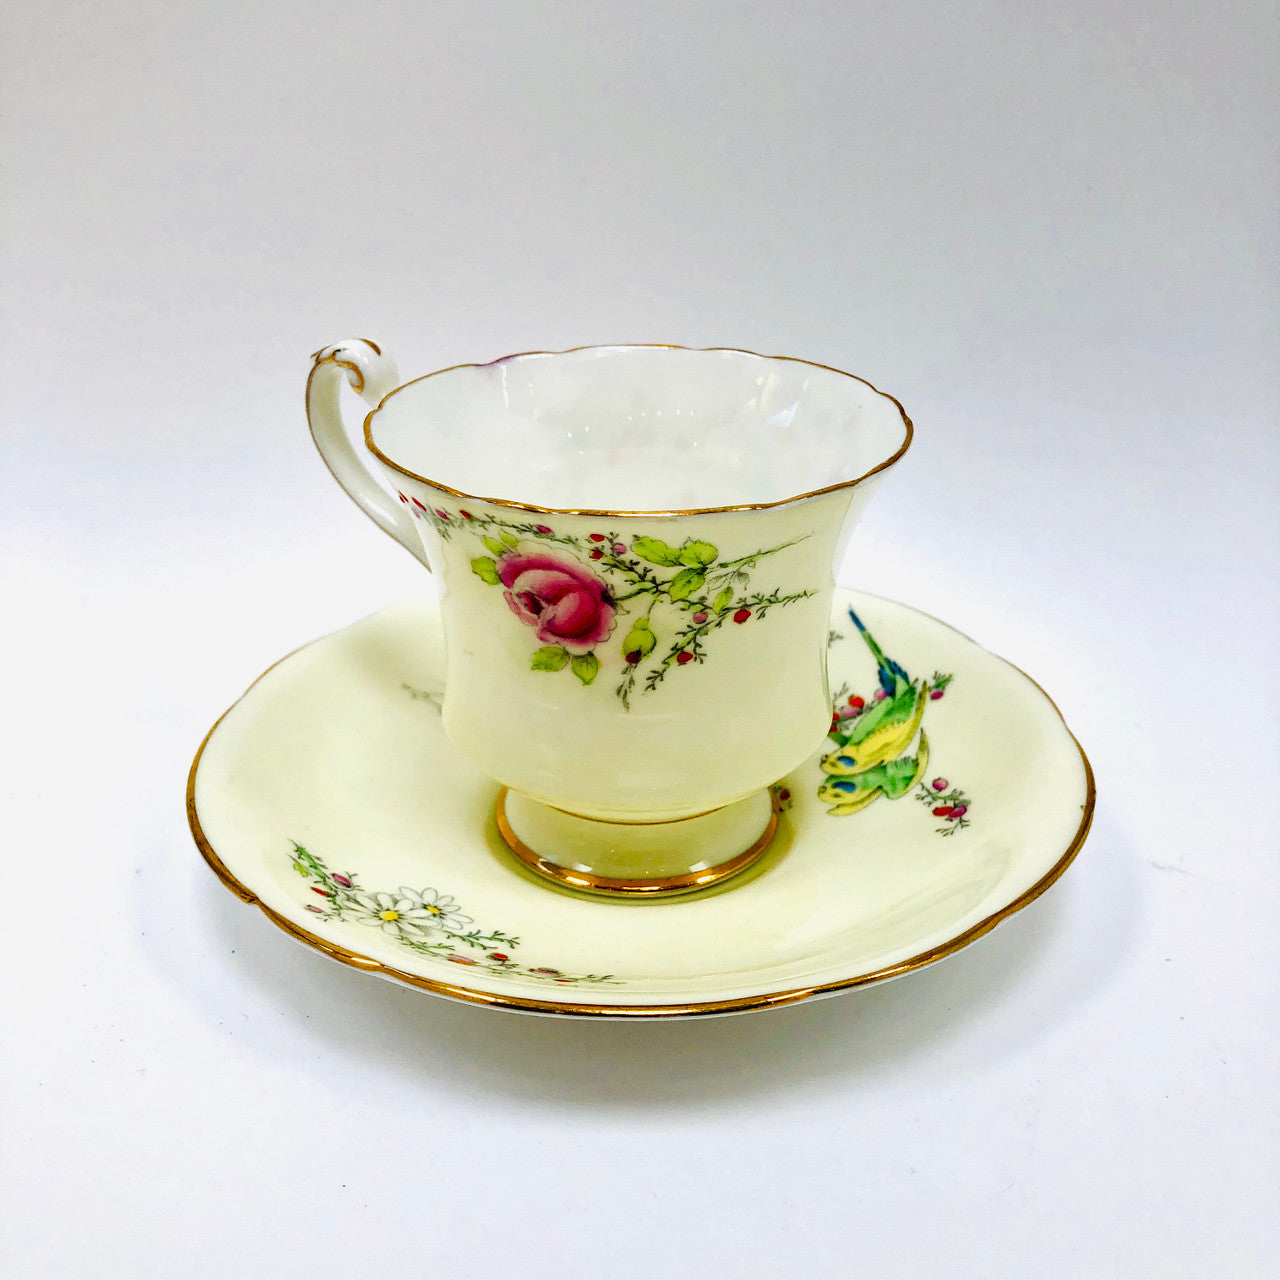 Vintage, Princess Margaret Rose, Footed, Cup and Saucer, Paragon, England, Budgies, Parakeets, Birds, Cream, Tea cup, Teacup, Saucer